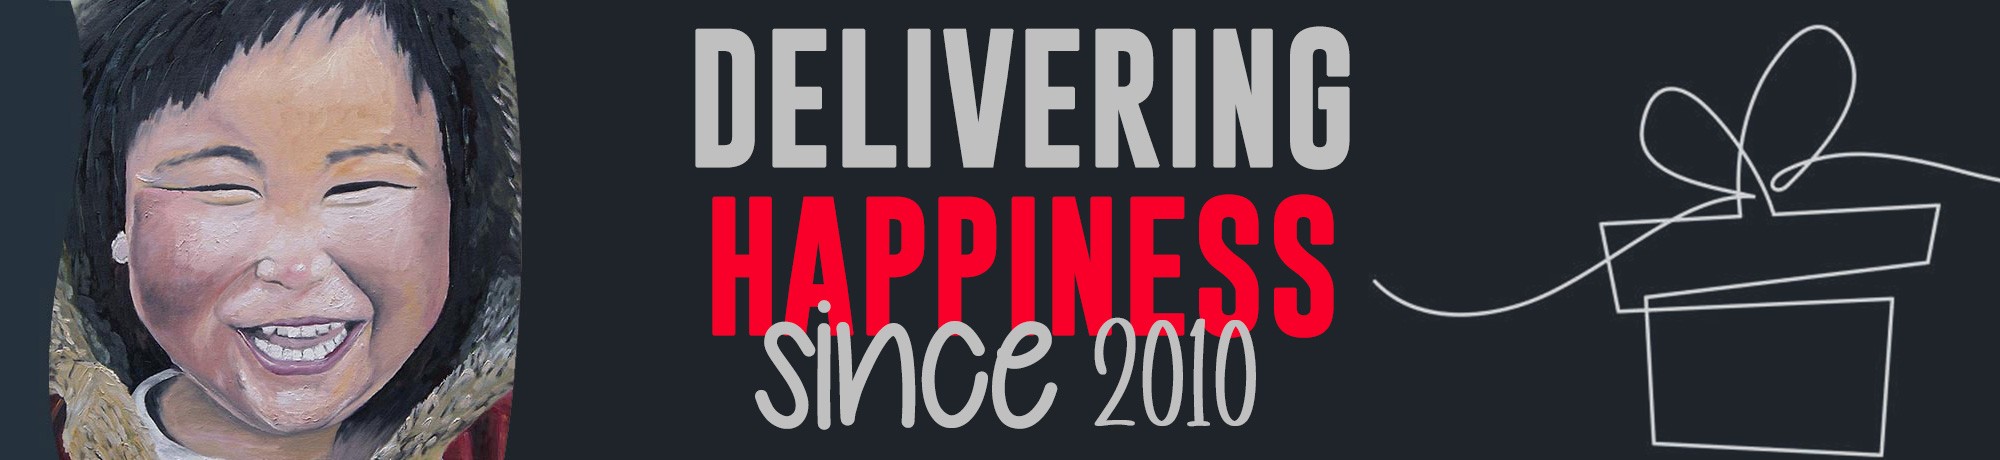 Delivering-Happiness-Since-2010-%28-gift-emoji%29-Banner_3.jpg